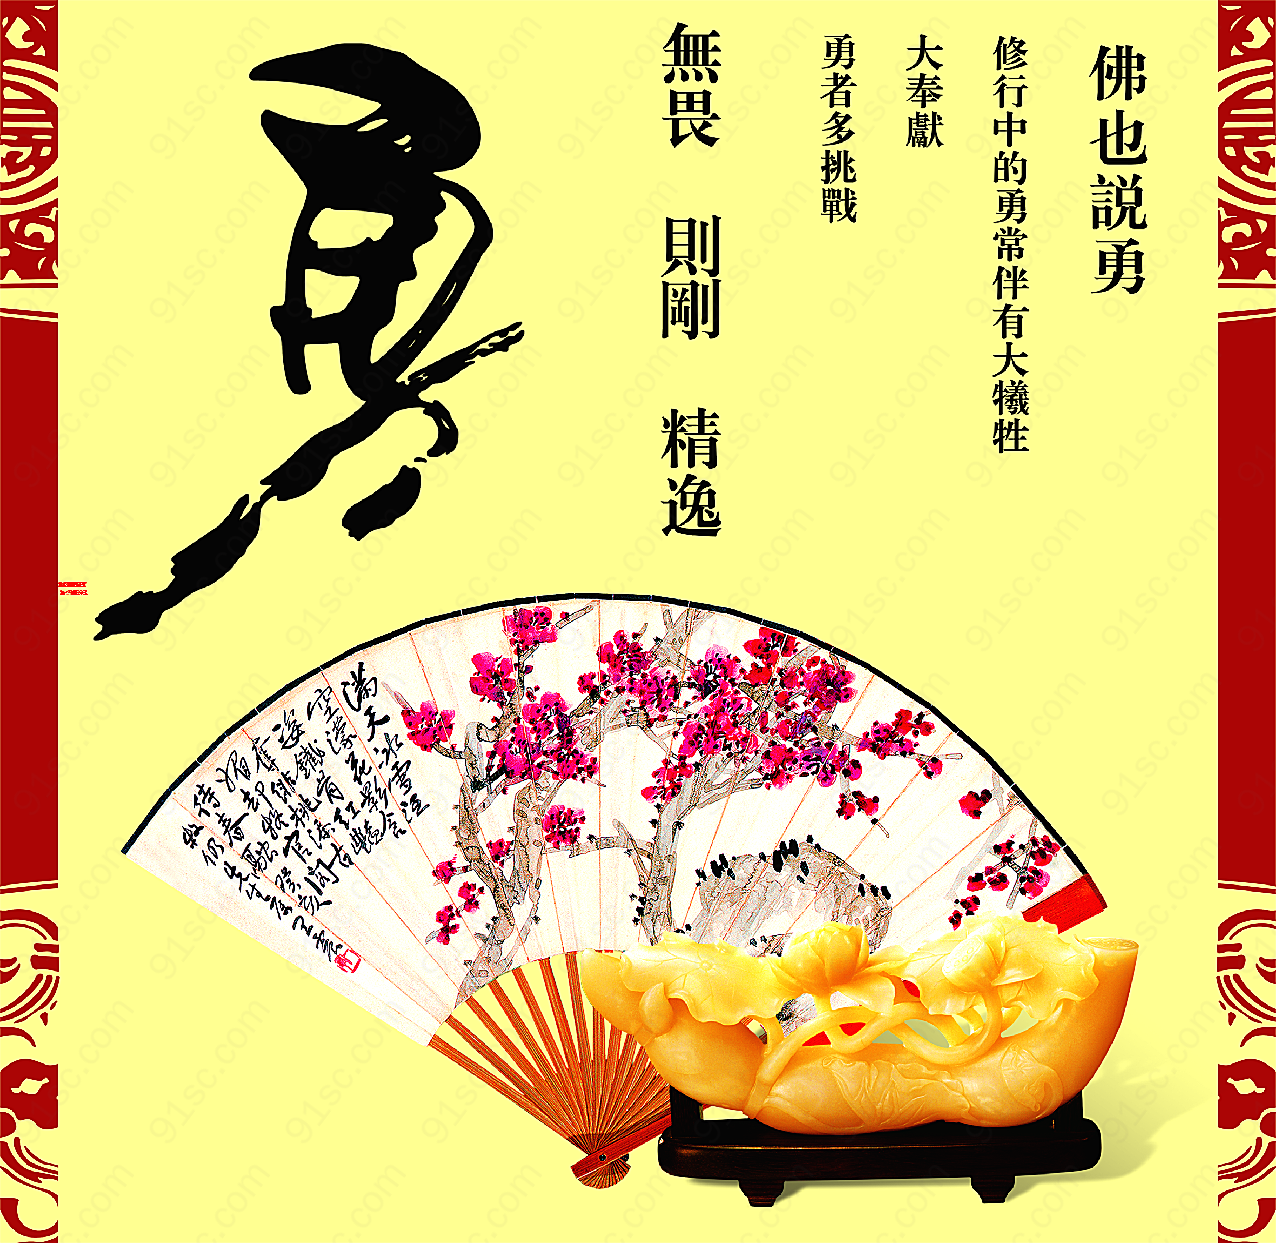 中国传统文化psd素材广告海报